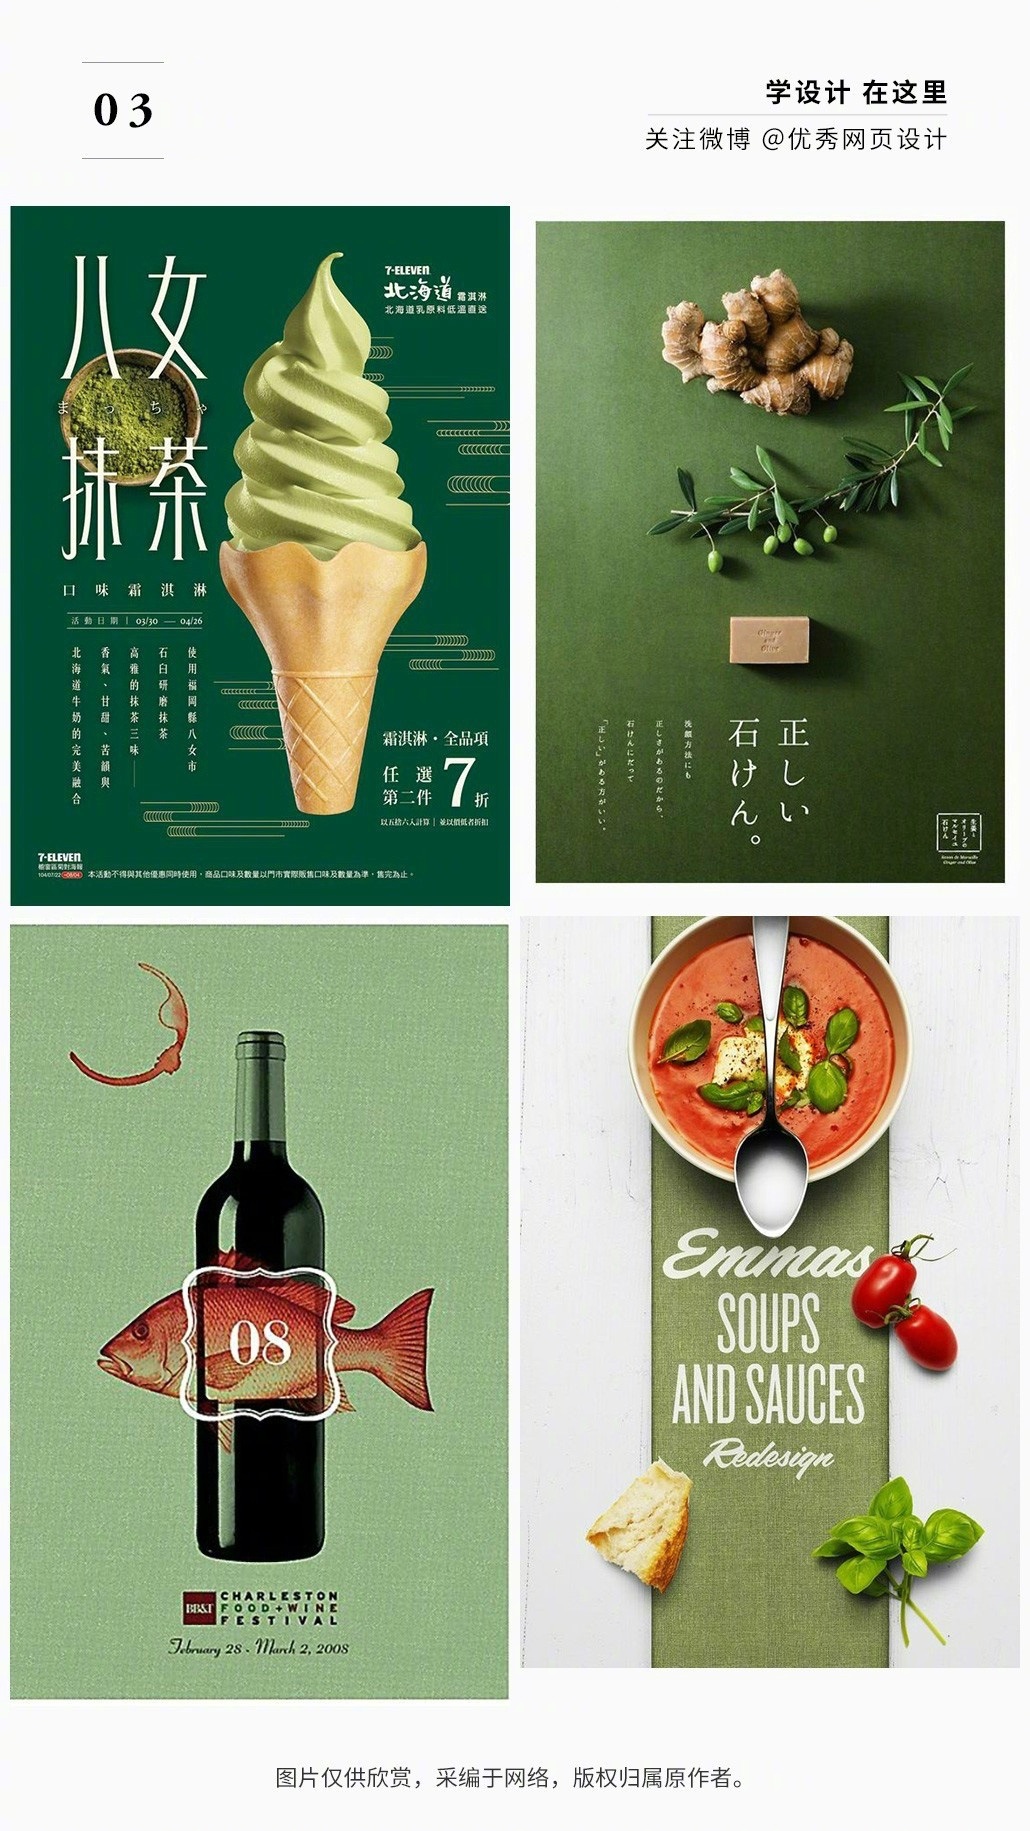 简约的美食海报是否能激发你的味蕾?